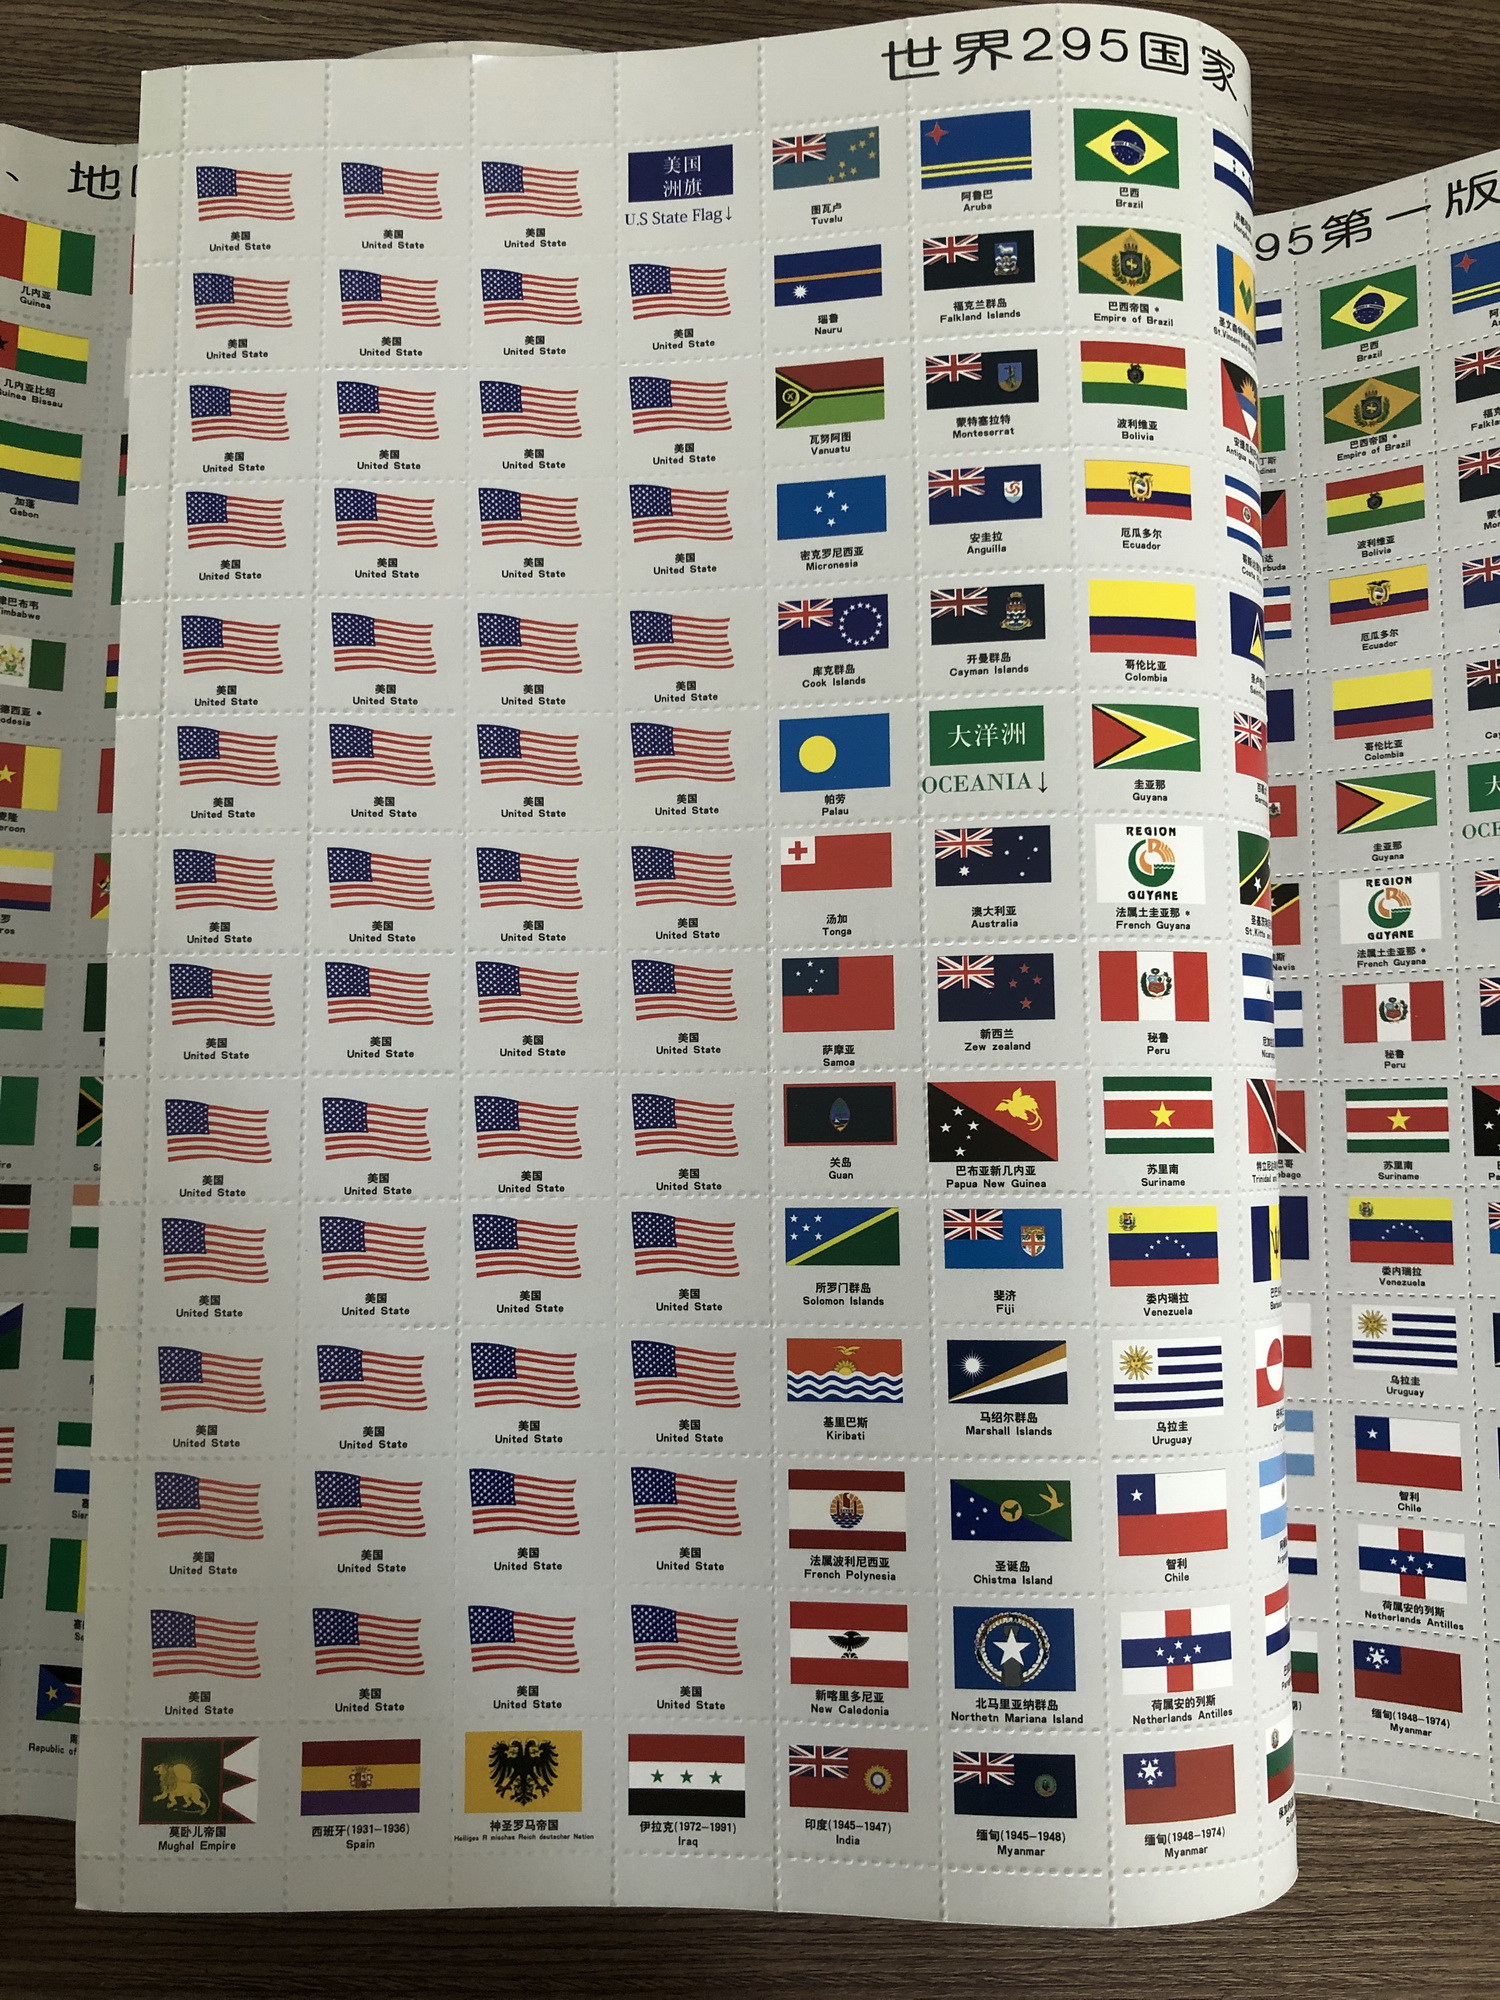 Bộ Quốc Kỳ Các Nước Trên Thế Giới và Cờ 50 Tiểu Bang của Mỹ PASA COLLECTION ( 295 cờ ) , răng cưa, xé dễ dàng - Hàng nhập khẩu